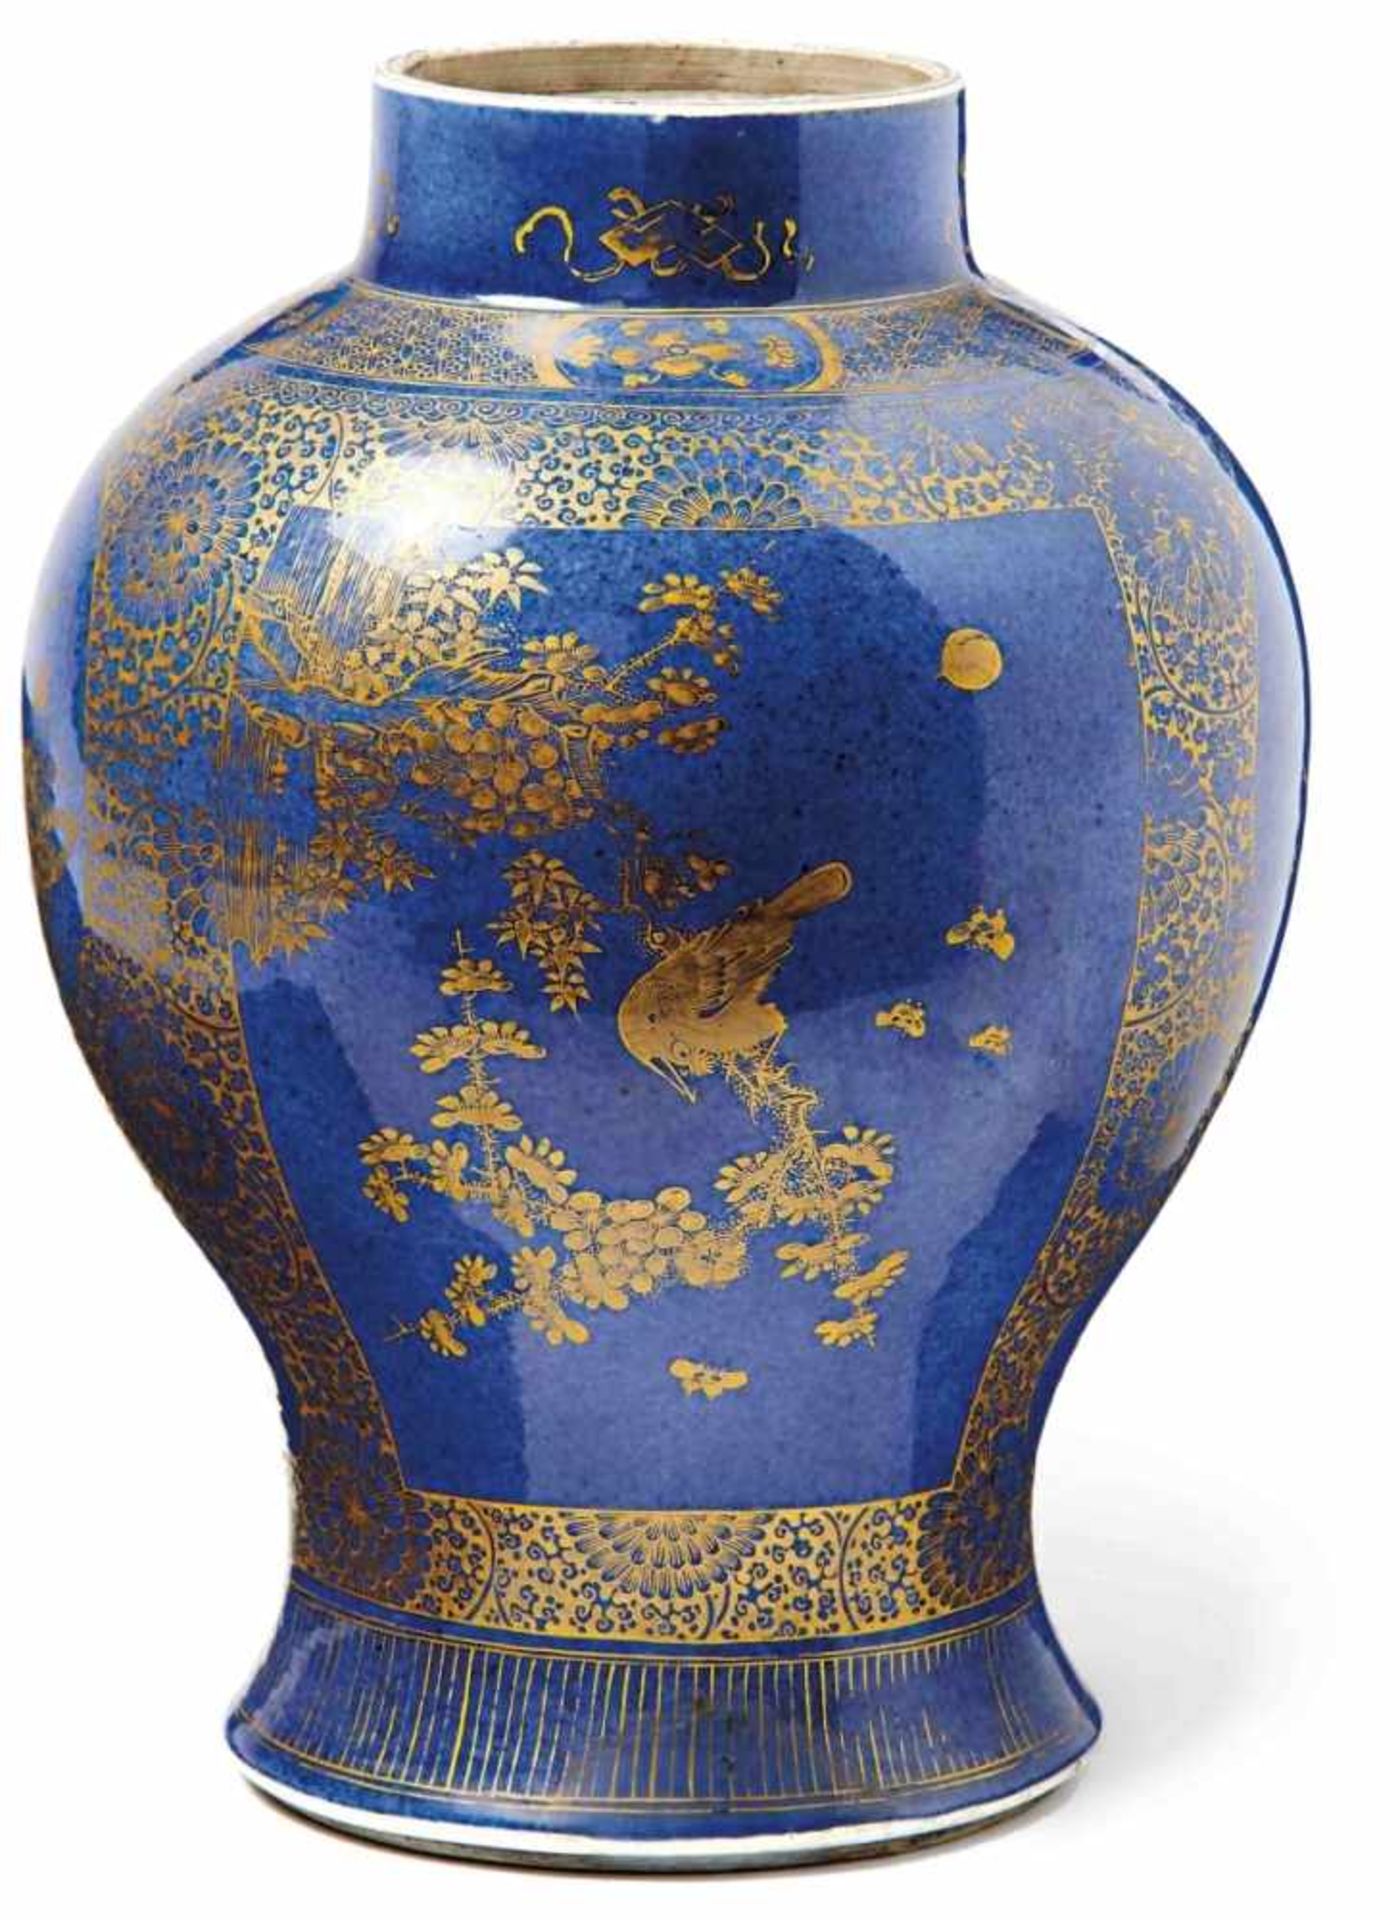 Powder-Blue-Vase mit goldradiertem DekorChina, Qing-Dynastie, E. 19. Jh.Hochschultrige Balusterform,